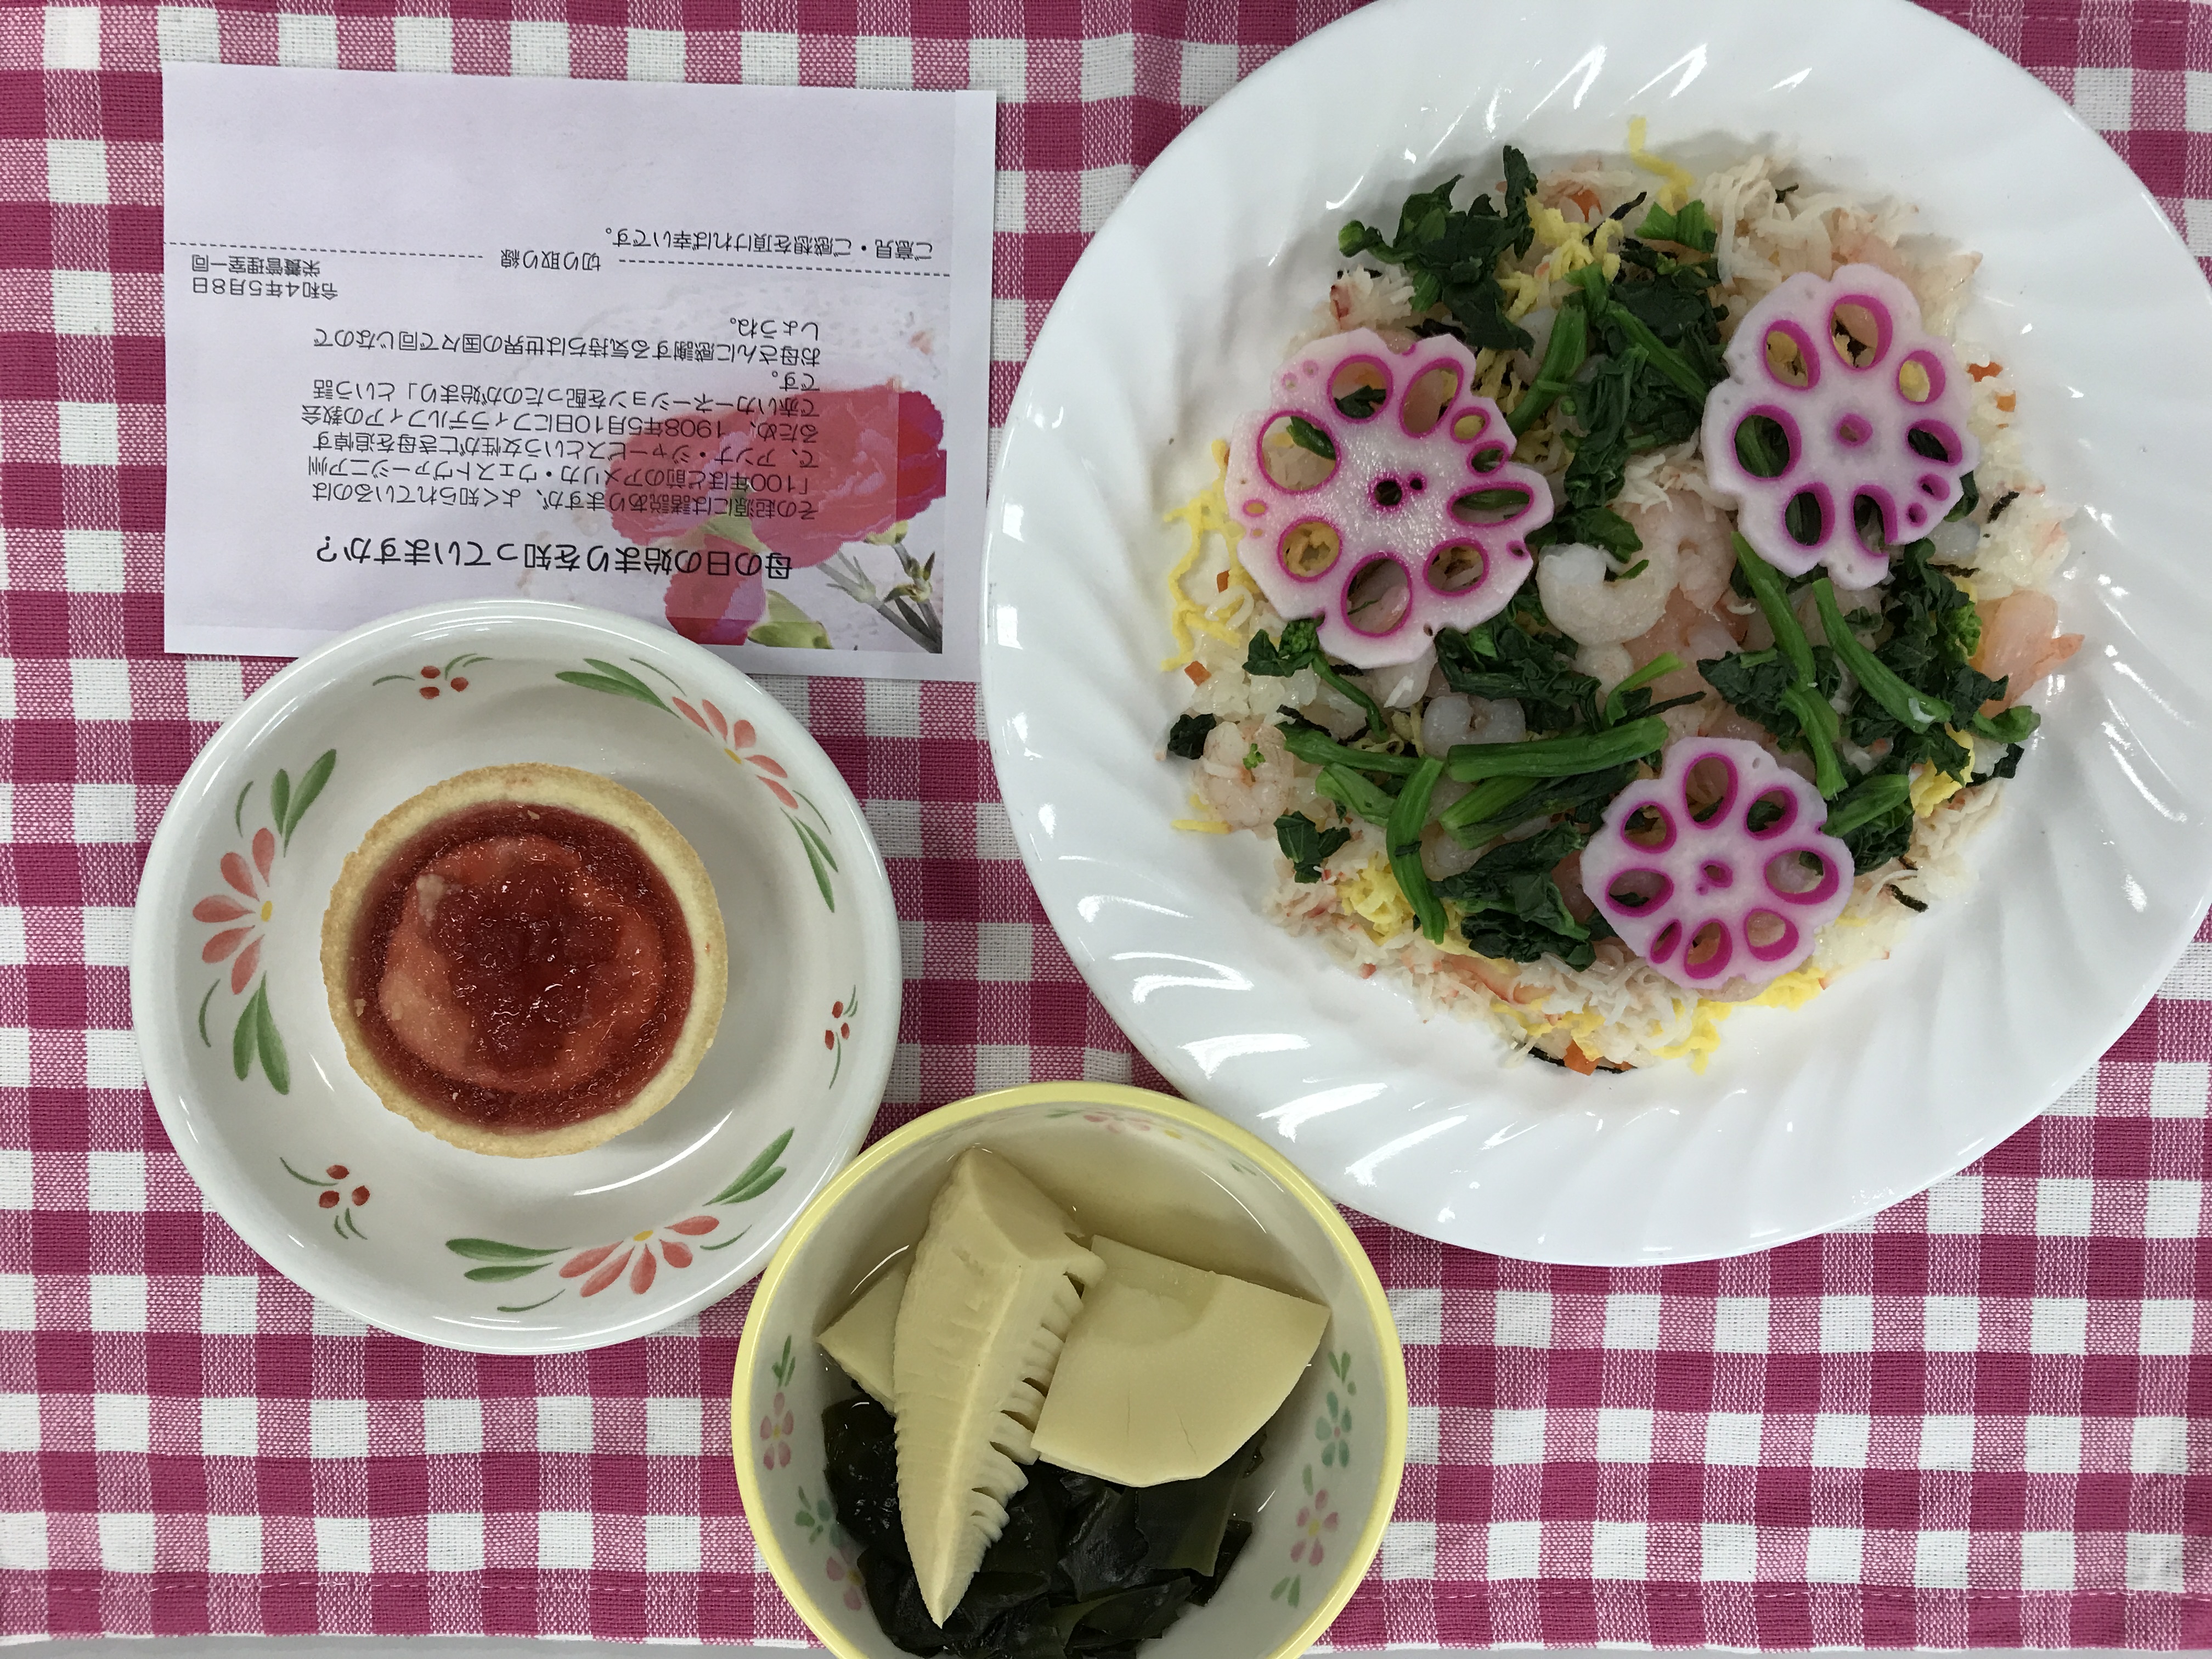 仙台七夕の行事食の写真